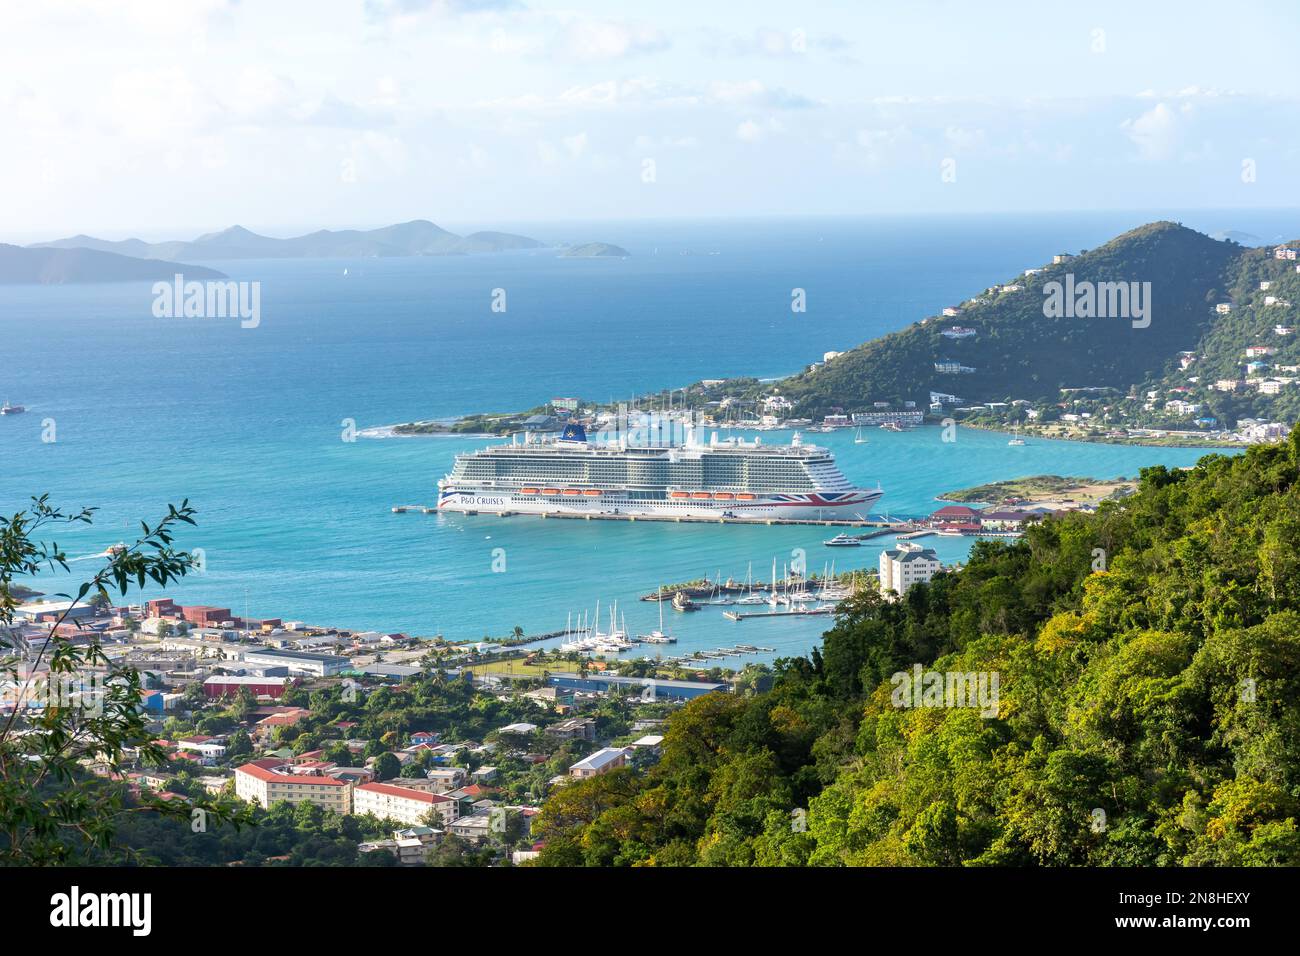 P&O Kreuzfahrtschiff, angelegt in Road Town vom Ridge Road Lookout, Tortola, den Britischen Jungferninseln (BVI), den kleinen Antillen, Karibik Stockfoto